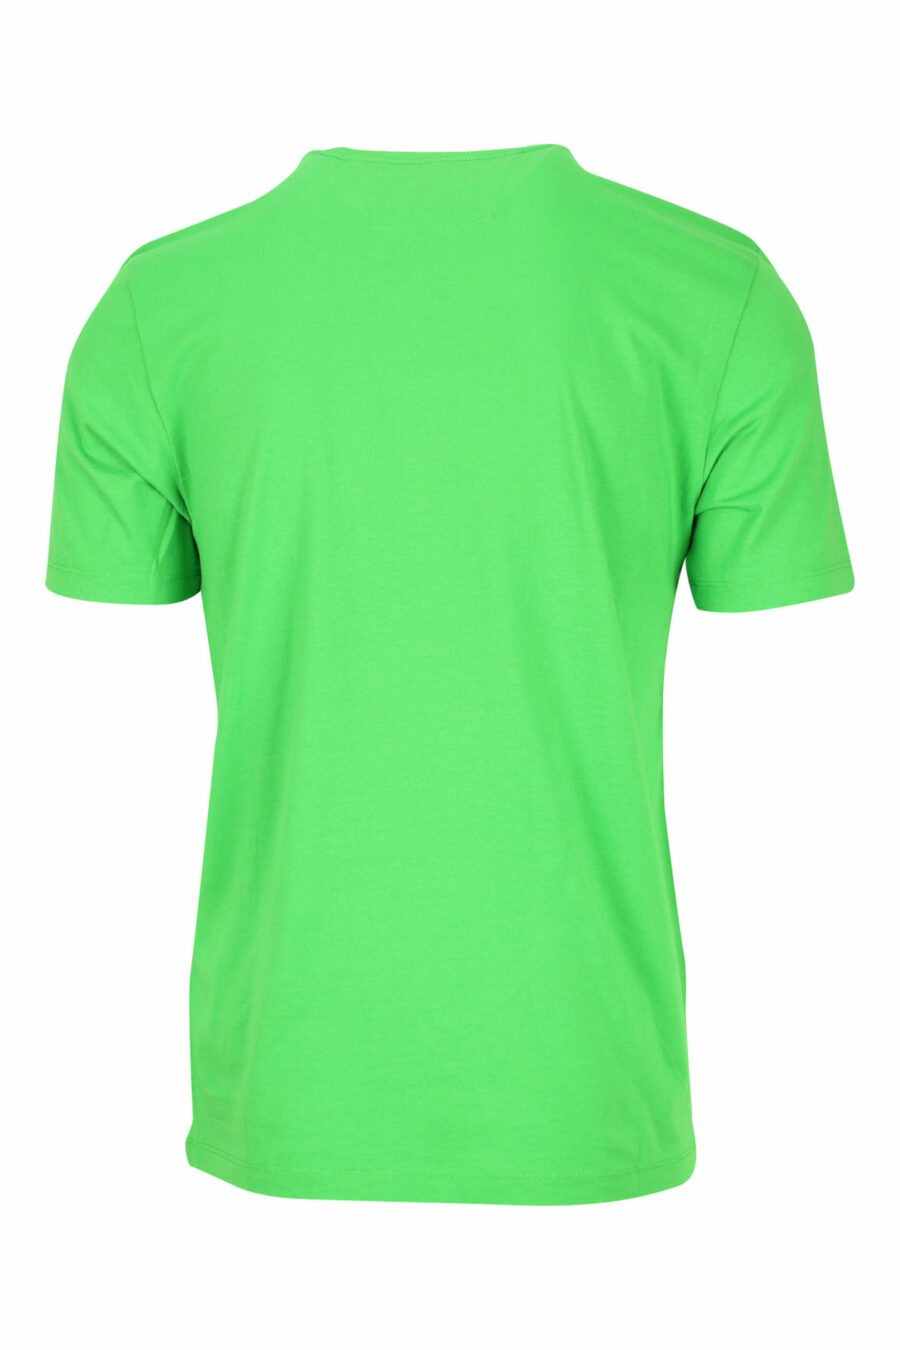 Grünes T-Shirt mit grafischem Maxilogo - 7620943560626 1 skaliert